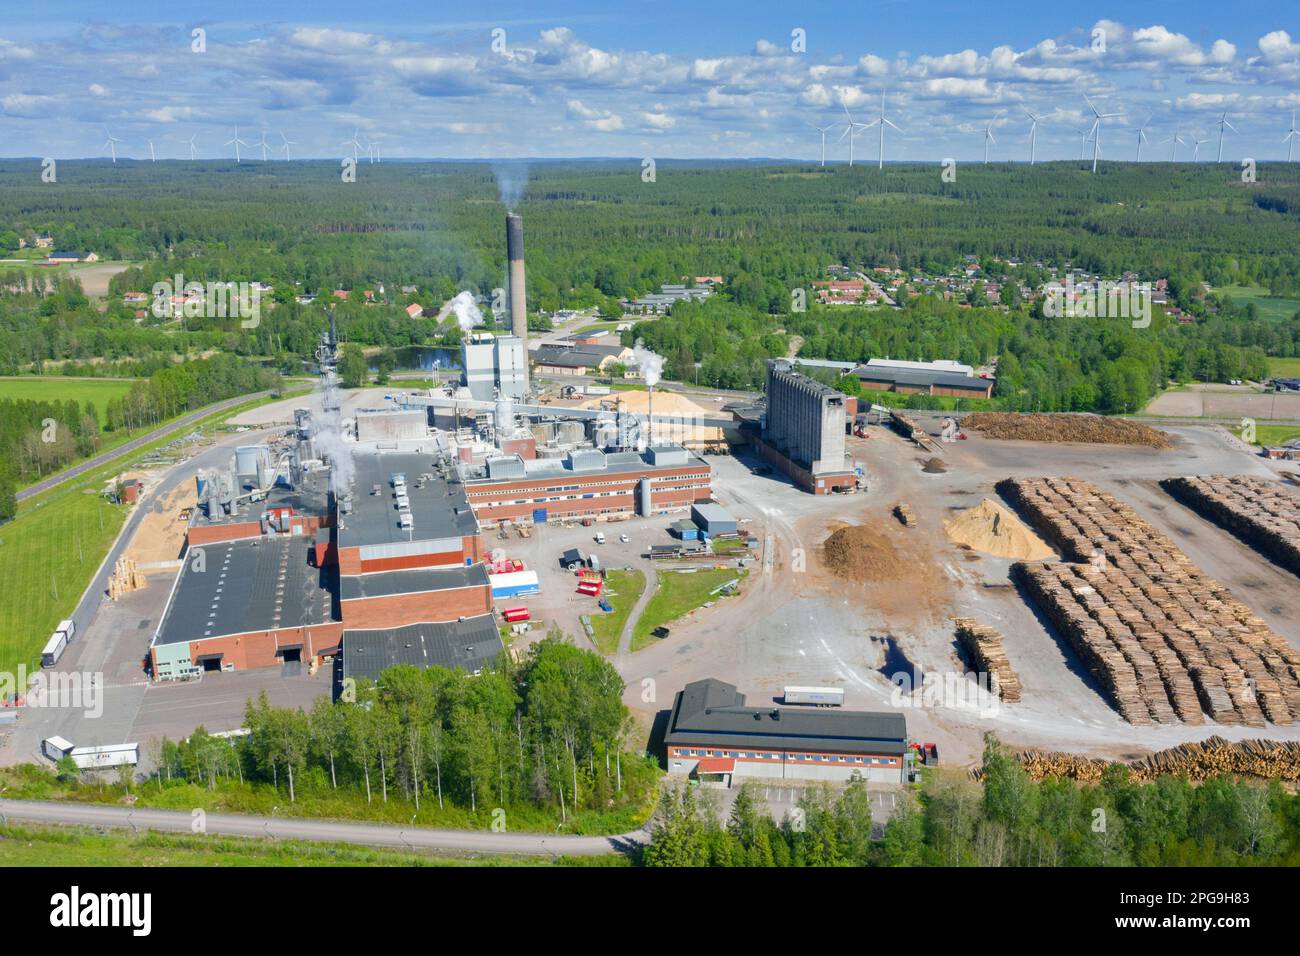 Vue aérienne de l'usine de papier Nordic Paper Bäckhammar AB et de l'usine de pâte de sulfate à Kristinehamn, Värmland, Suède, Scandinavie Banque D'Images